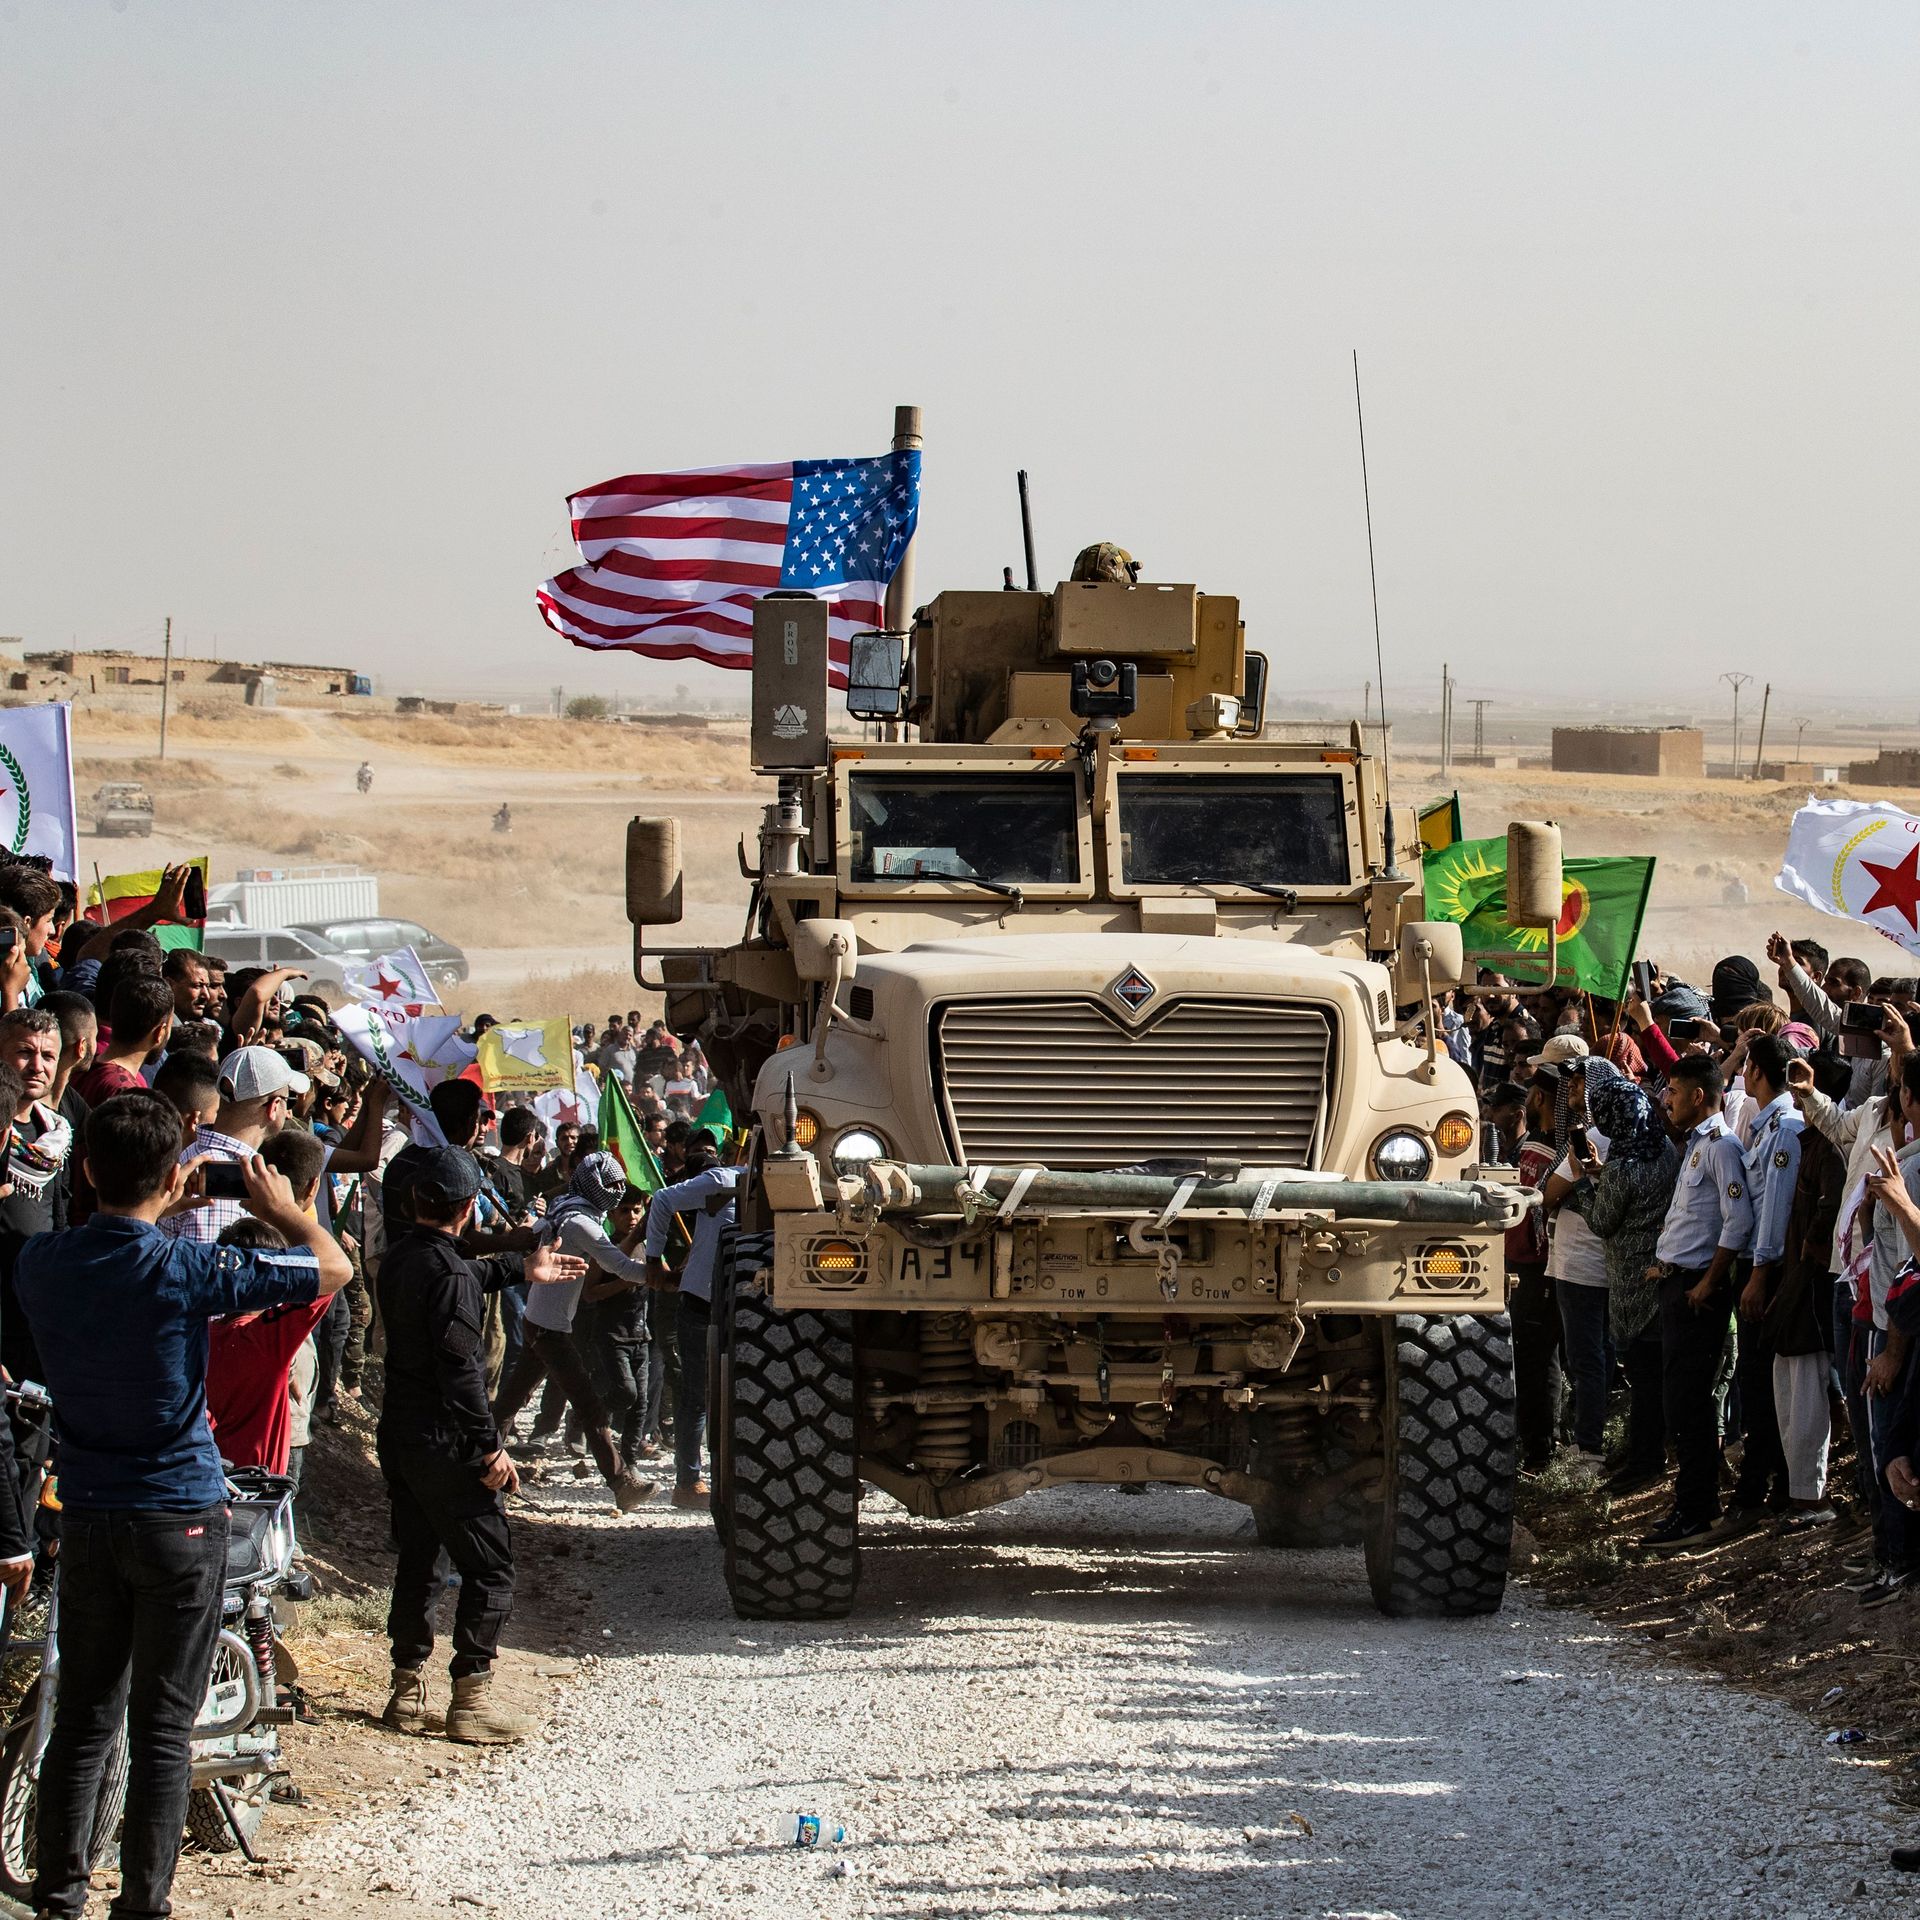 Syrians gather around a U.S. armored car